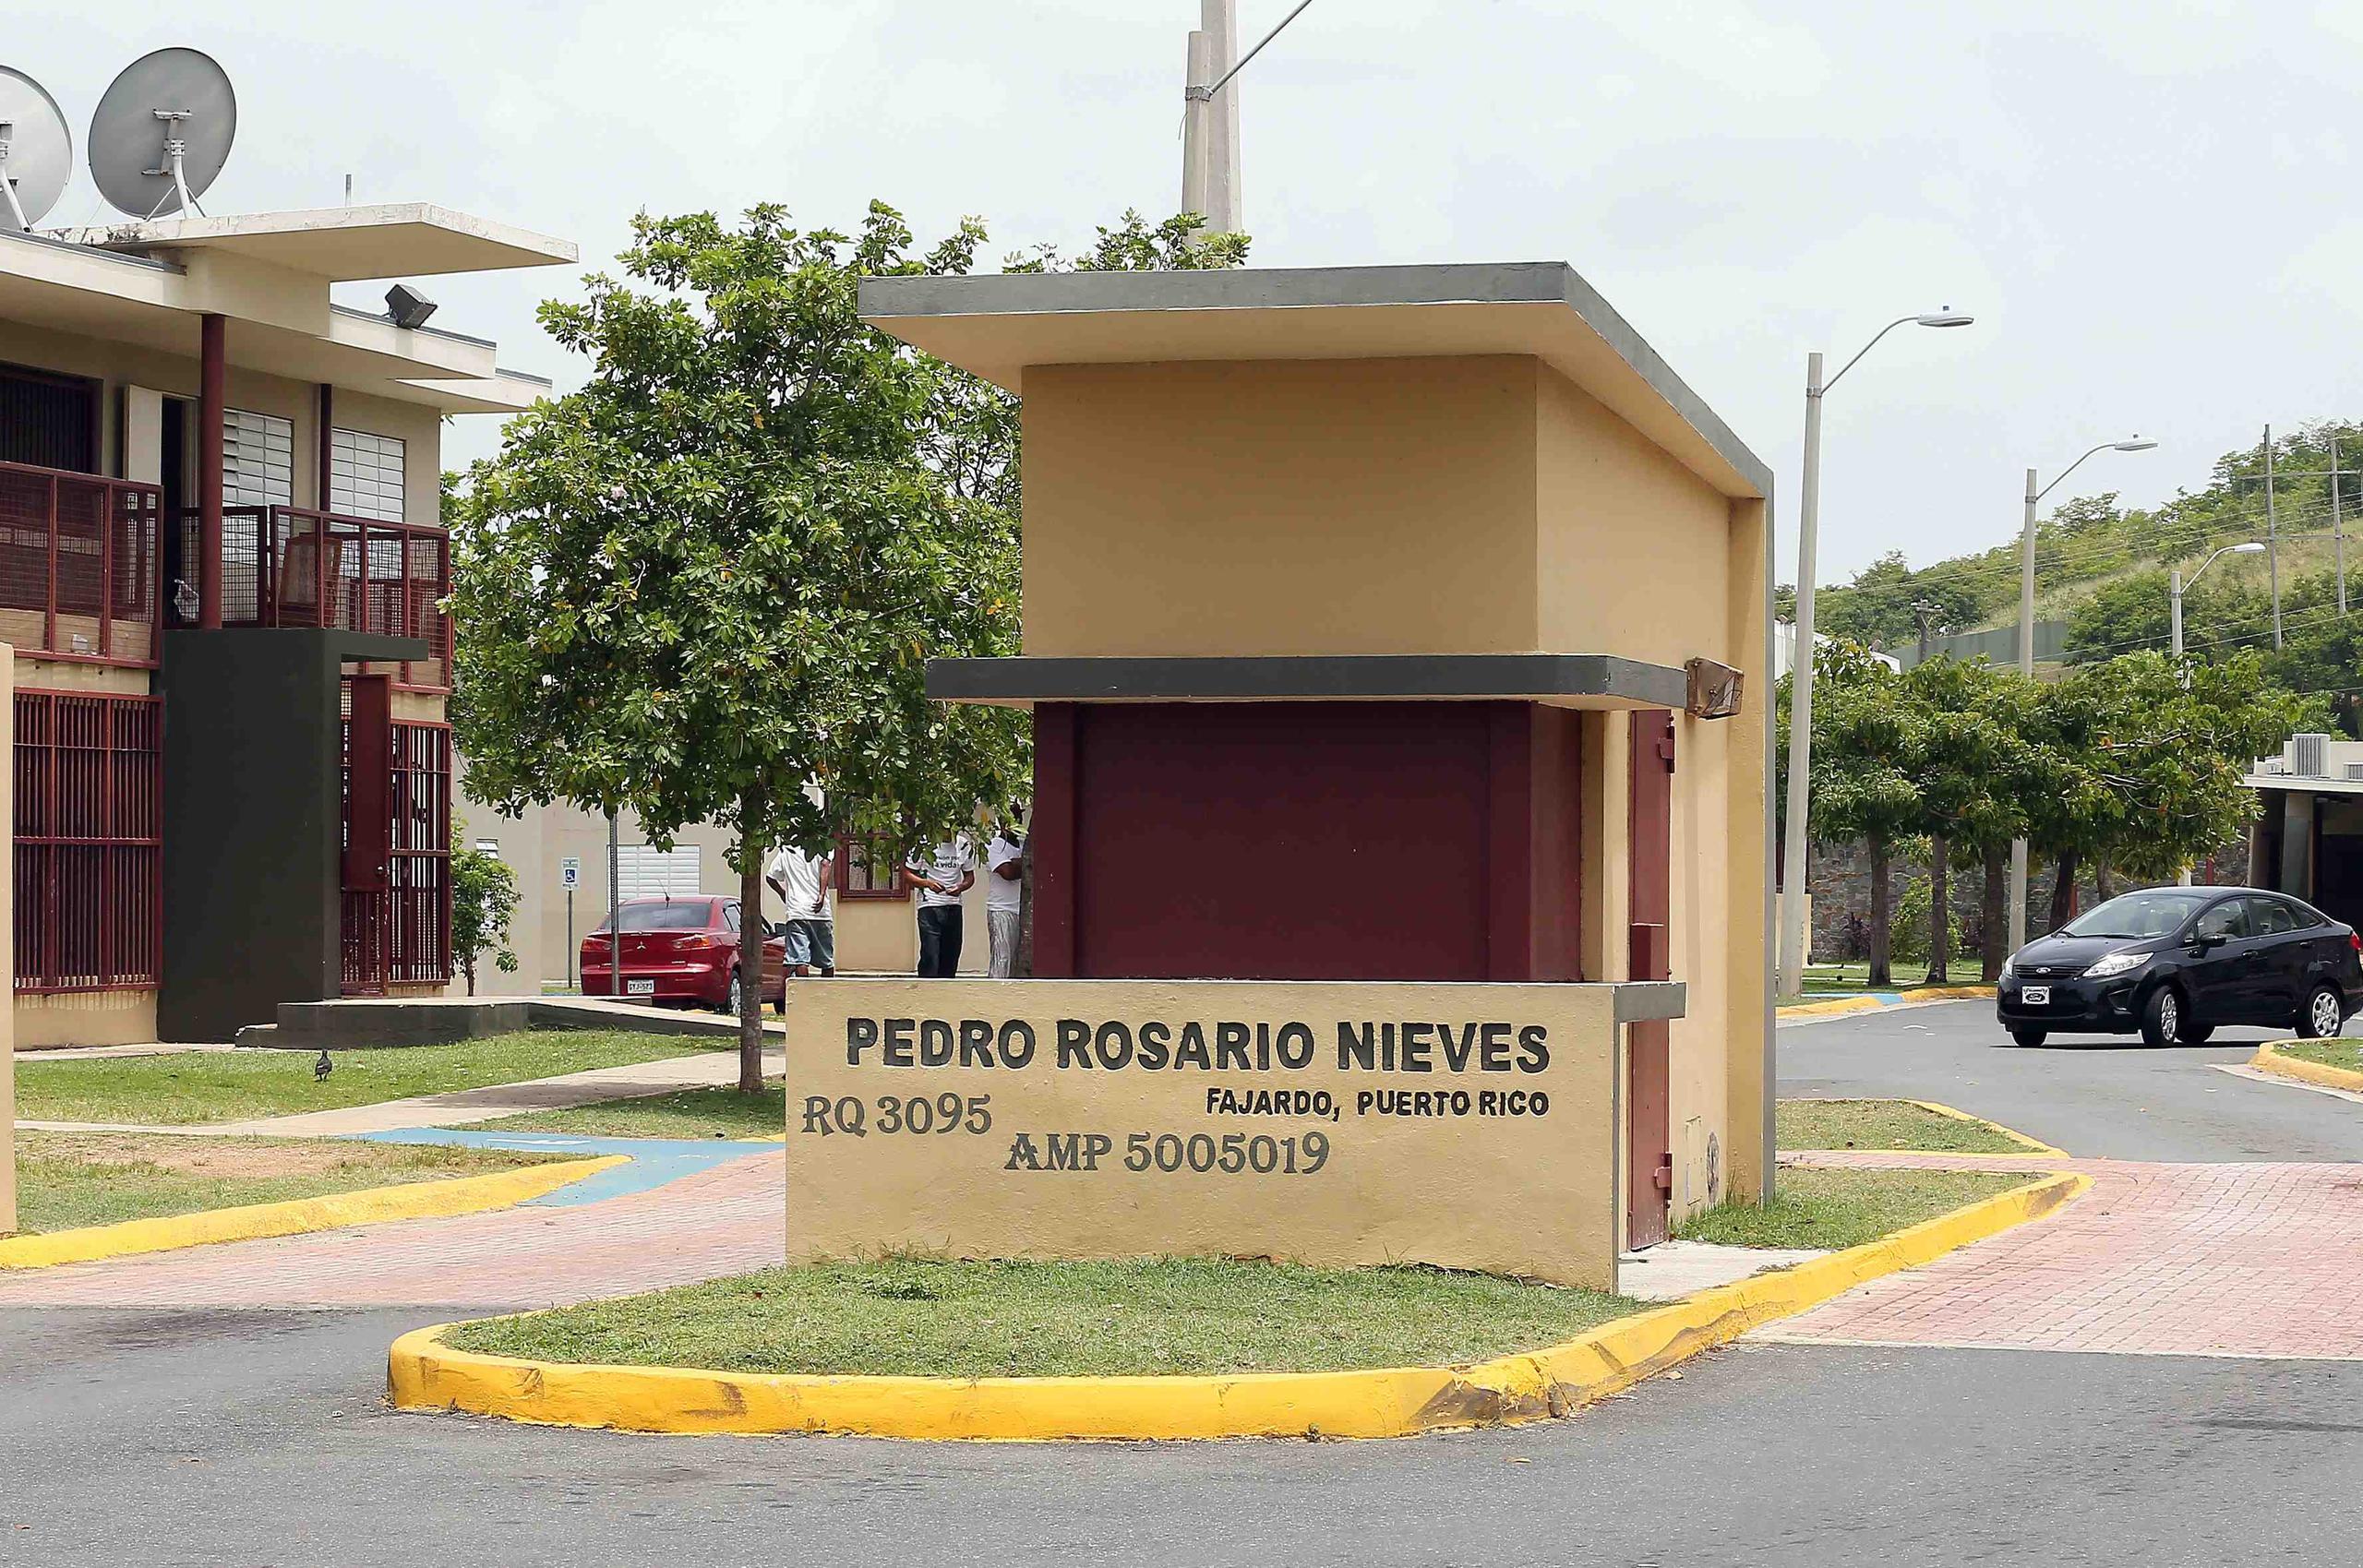 El crimen ocurrió frente al residencial Pedro Rosario Nieves en Fajardo. (Archivo)